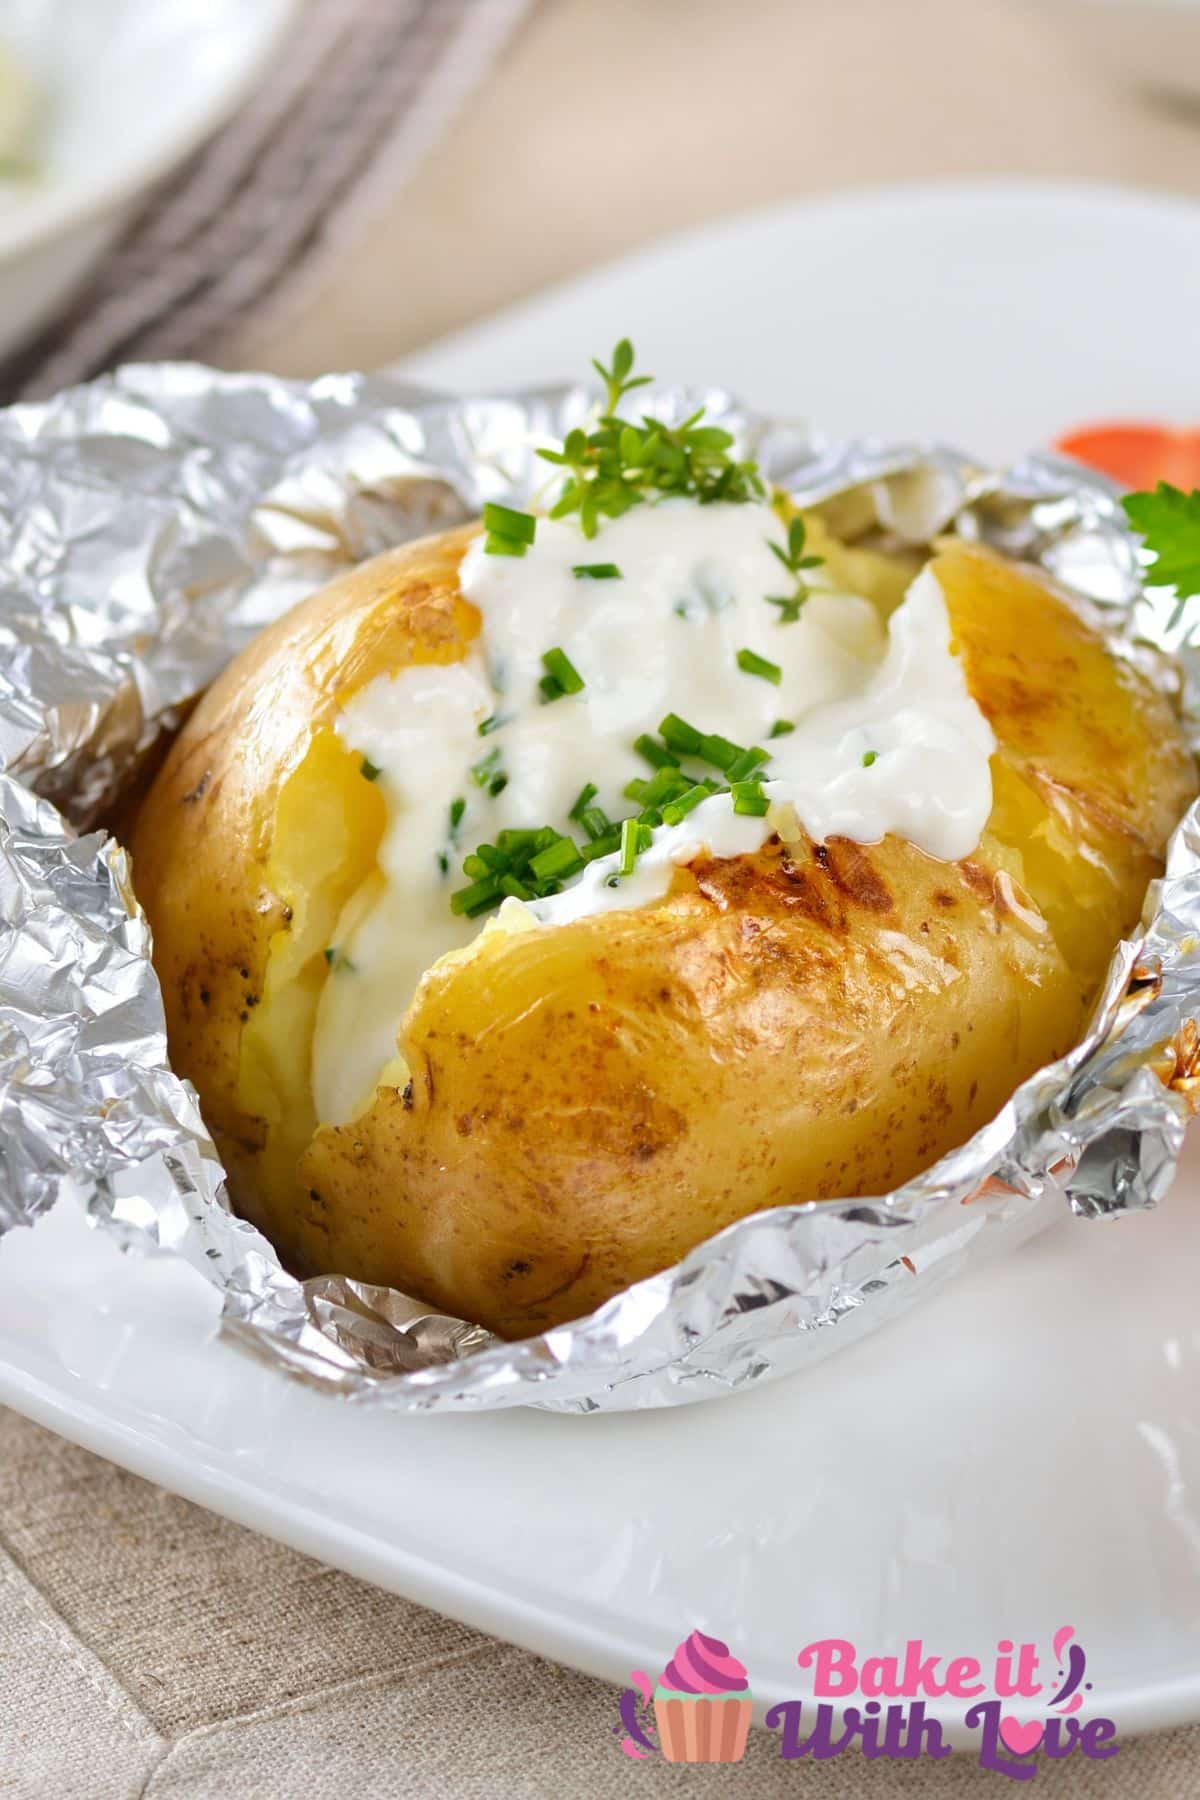 Imagem alta mostrando uma batata assada em um prato branco, com creme azedo e cebolinha.